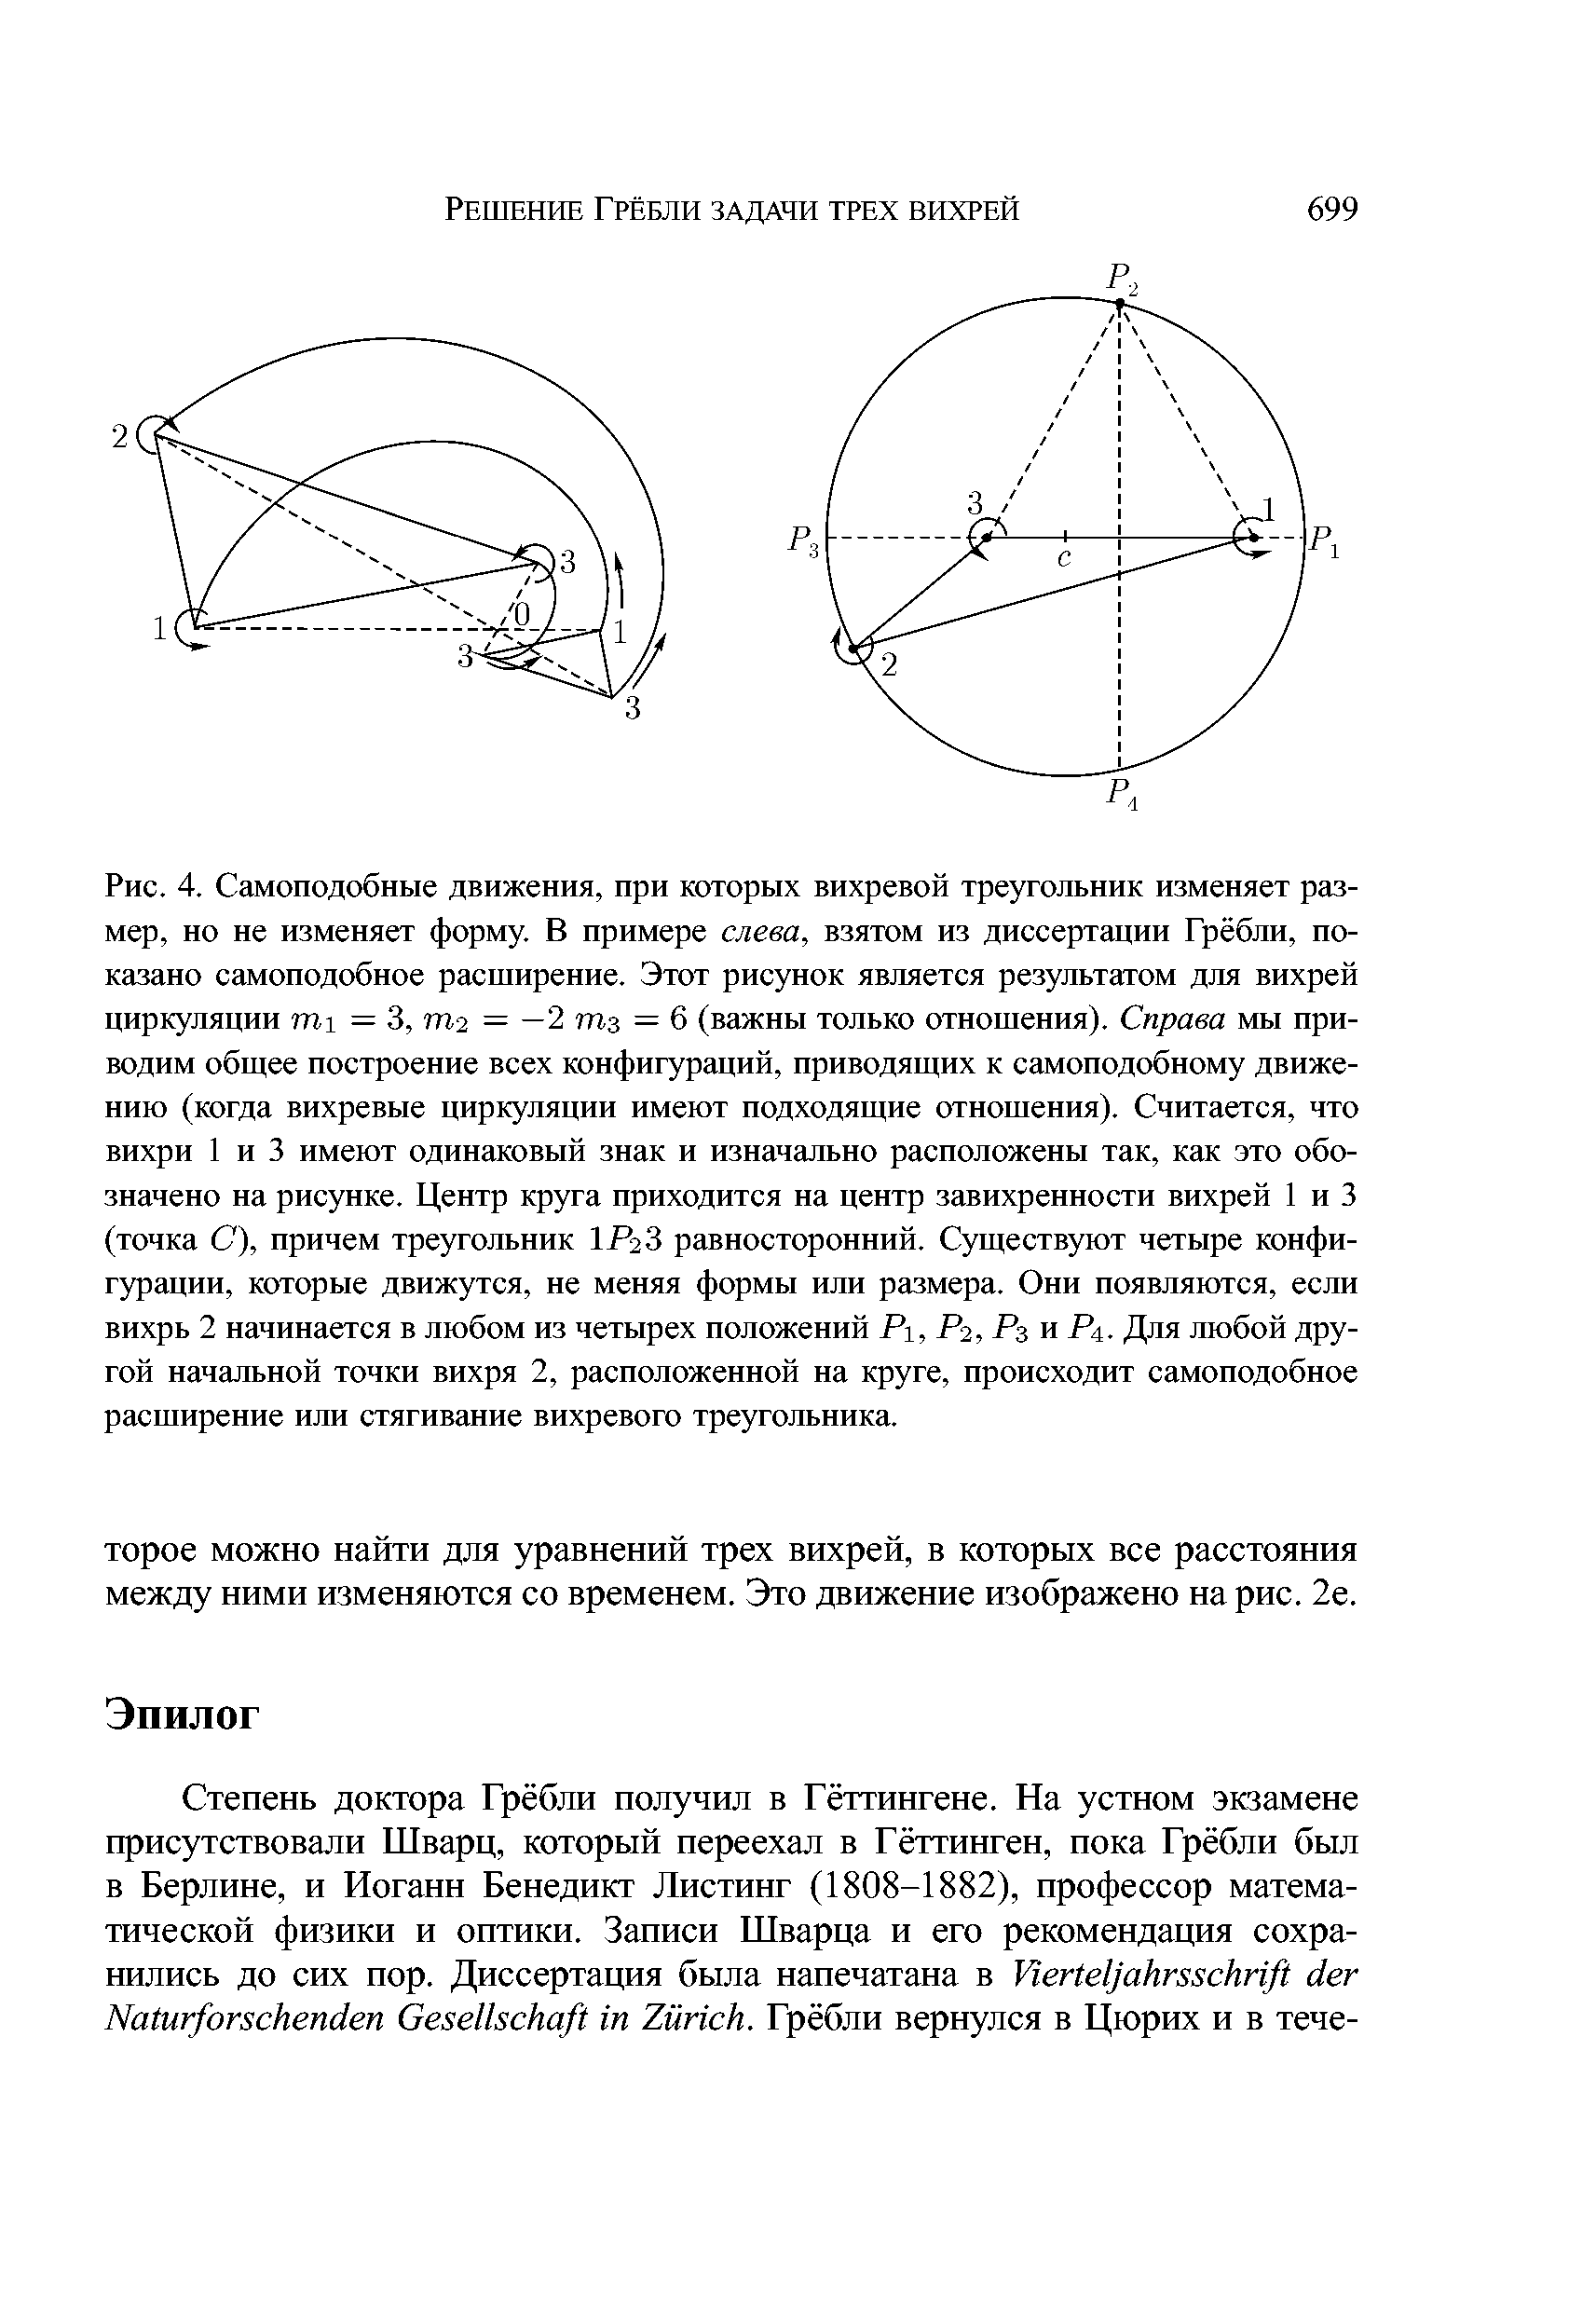 Рис. 4. Самоподобные движения, при которых вихревой треугольник изменяет размер, но не изменяет форму. В примере слева, взятом из диссертации Грёбли, показано самоподобное расширение. Этот рисунок является результатом для <a href="/info/752303">вихрей циркуляции</a> гп1 = 3, Ш2 = —2 Шз = 6 (важны только отношения). Справа мы приводим общее построение всех конфигураций, приводящих к самоподобному движению (когда вихревые циркуляции имеют подходящие отношения). Считается, что вихри 1 и 3 имеют одинаковый знак и изначально расположены так, как это обозначено на рисунке. Центр круга приходится на центр завихренности вихрей 1 и 3 (точка С), причем треугольник 1Р2З равносторонний. Существуют четыре конфигурации, которые движутся, не меняя формы или размера. Они появляются, если вихрь 2 начинается в любом из четырех положений Р1, Р2,Рз к Р4. Для любой другой начальной точки вихря 2, расположенной на круге, происходит самоподобное расширение или стягивание вихревого треугольника.
